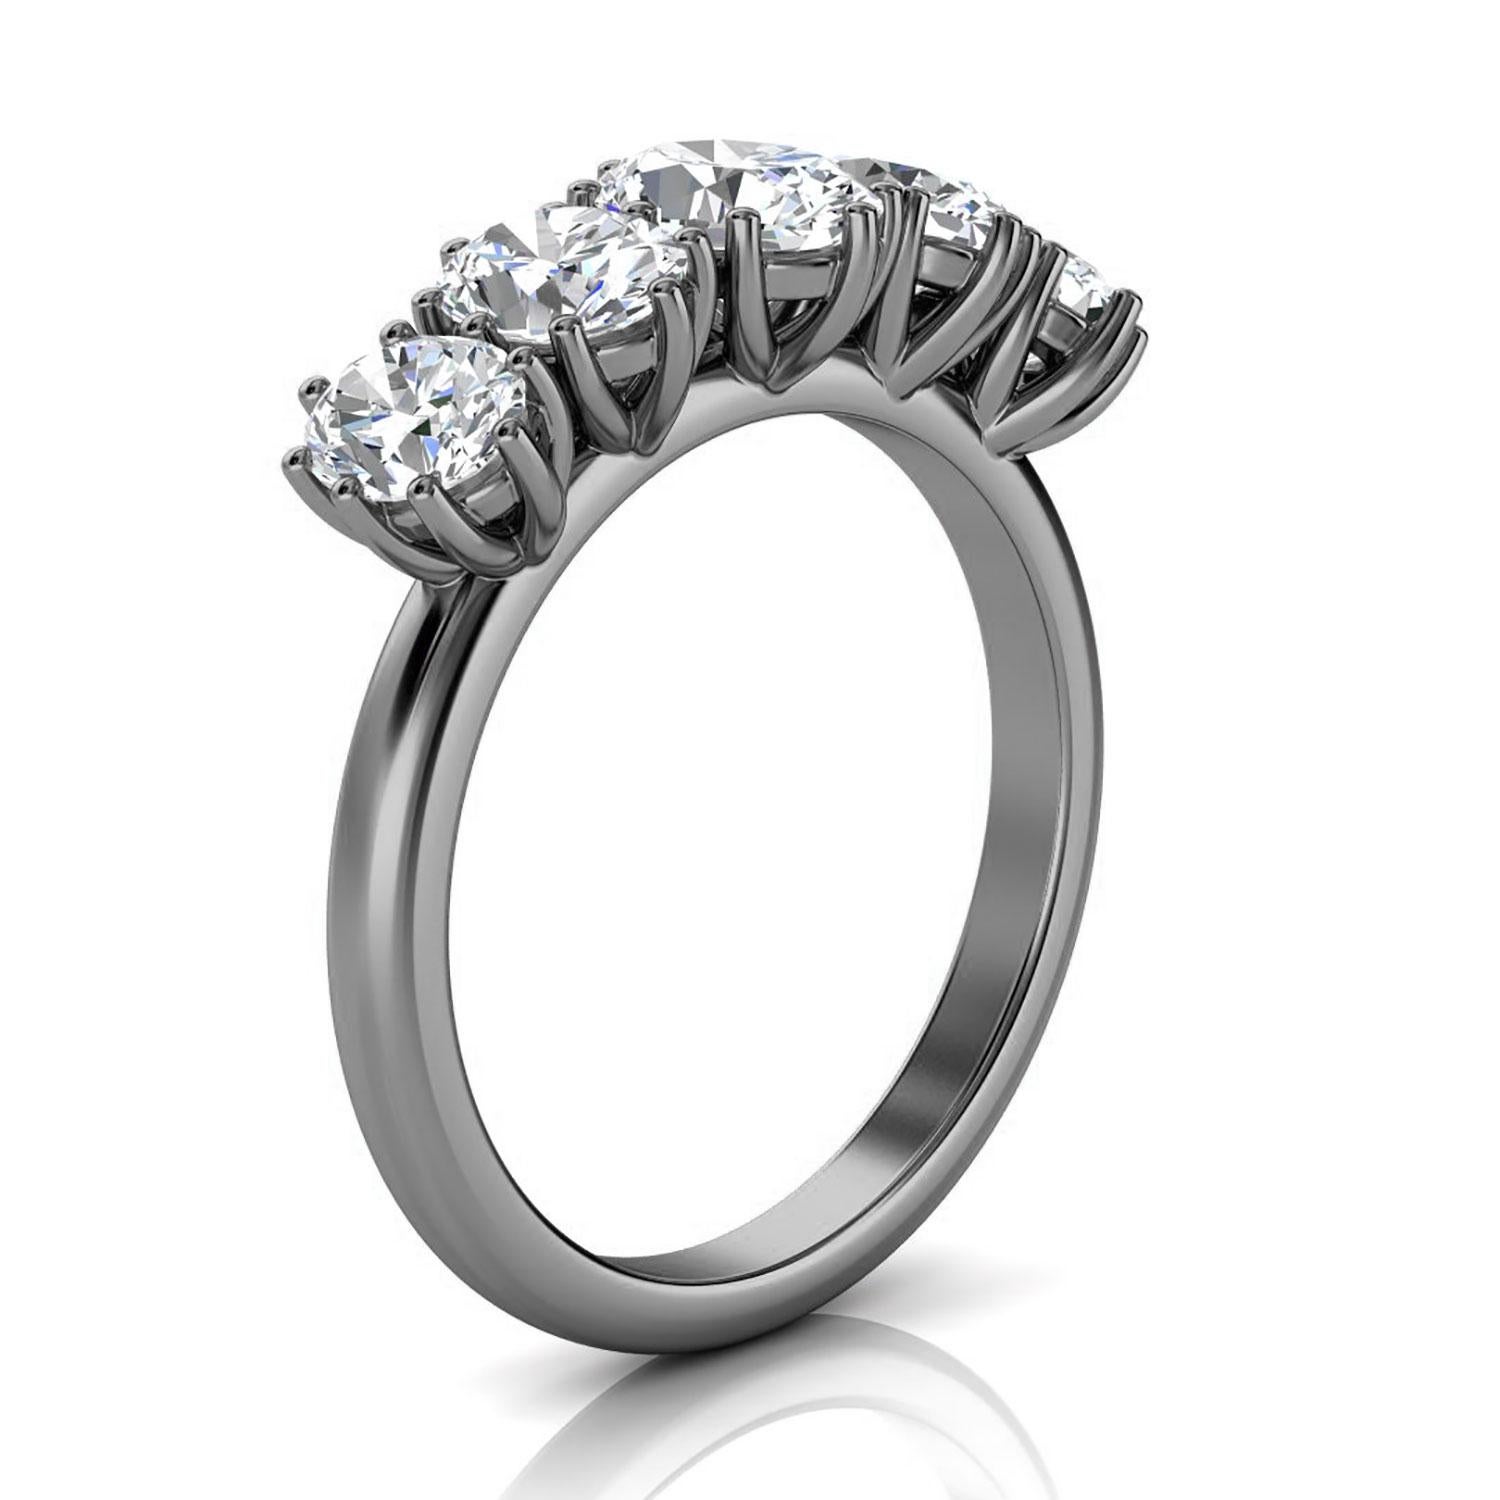 Dieser zierliche Ring besticht durch seine organische Ausstrahlung. Er verfügt über fünf (5) abgestufte ovale Diamanten, die in einem zierlichen Kronenkorb mit sechs (6) Zacken gefasst sind. Erleben Sie den Unterschied persönlich!

Einzelheiten zum